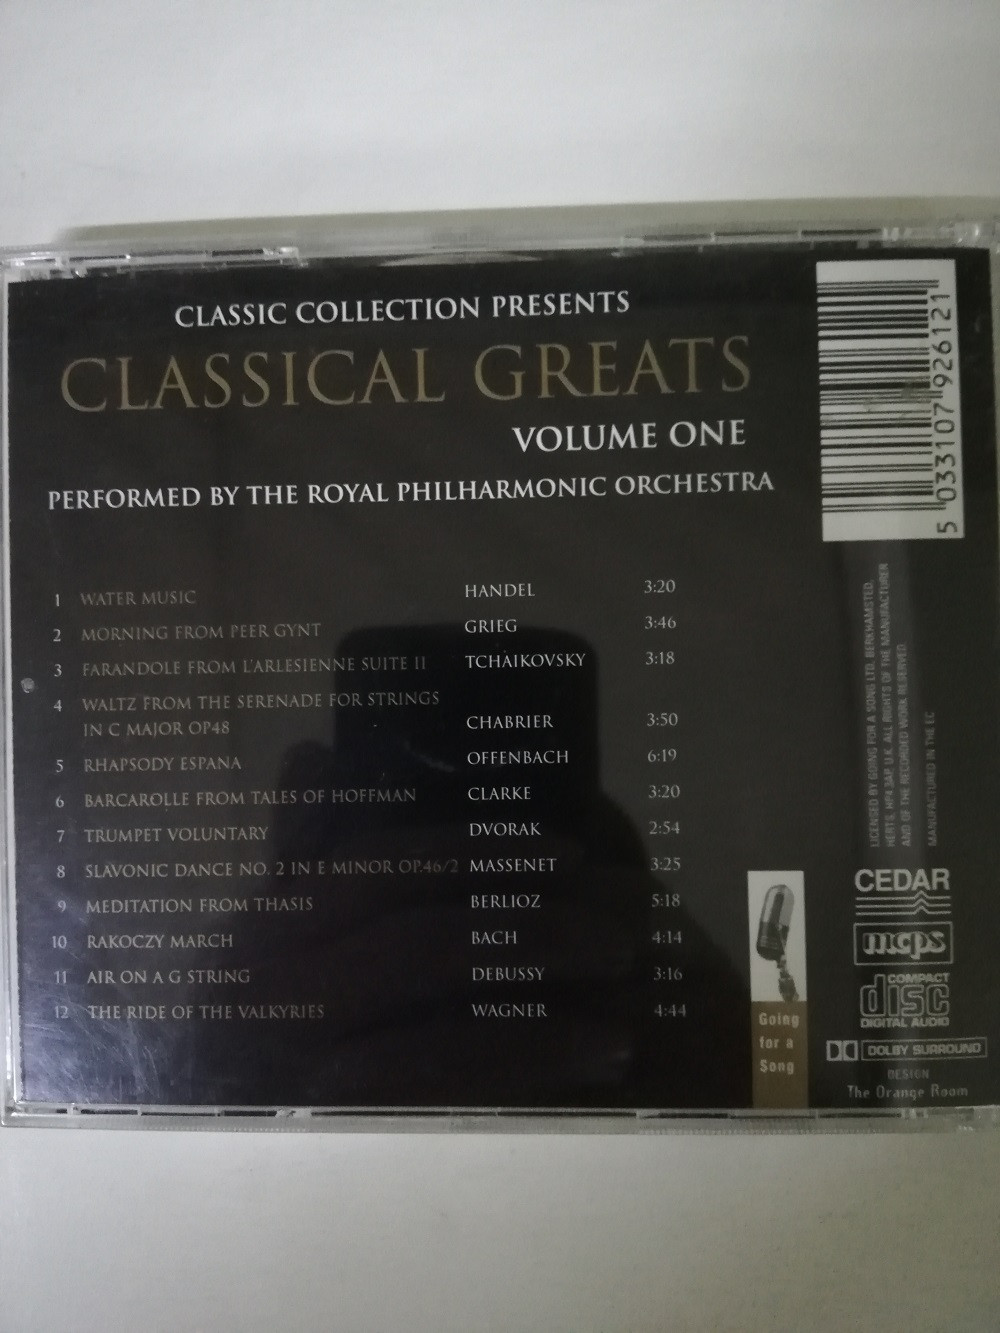 Imagen CD CLASSICAL GREATS - CLASSICAL GREATS VOL. 1 2